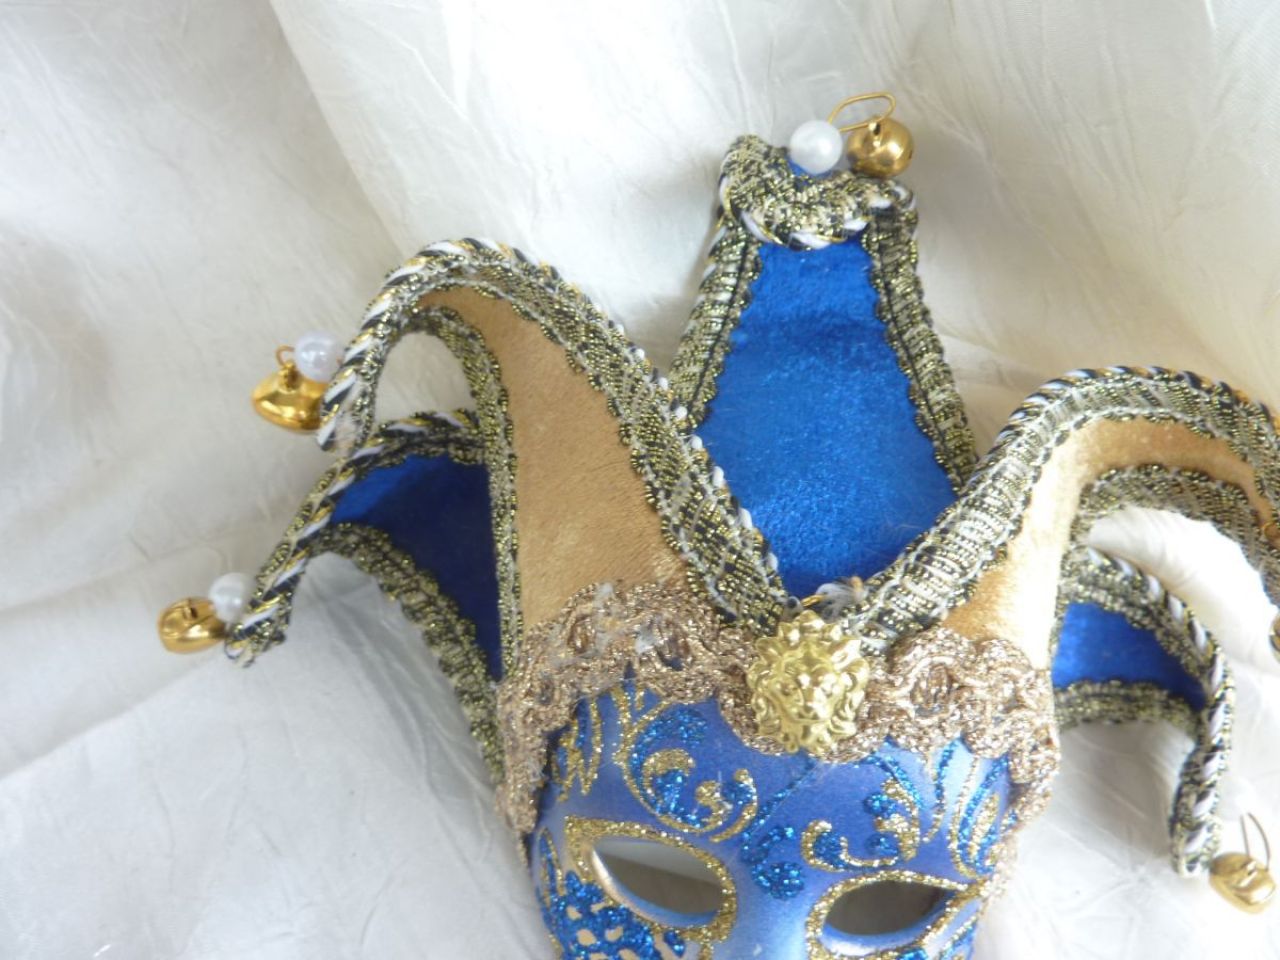 masque petit pour décoration, bleu et or, coiffe en velours jeune et bleu, visage bleu avec arabesques en glitter doré